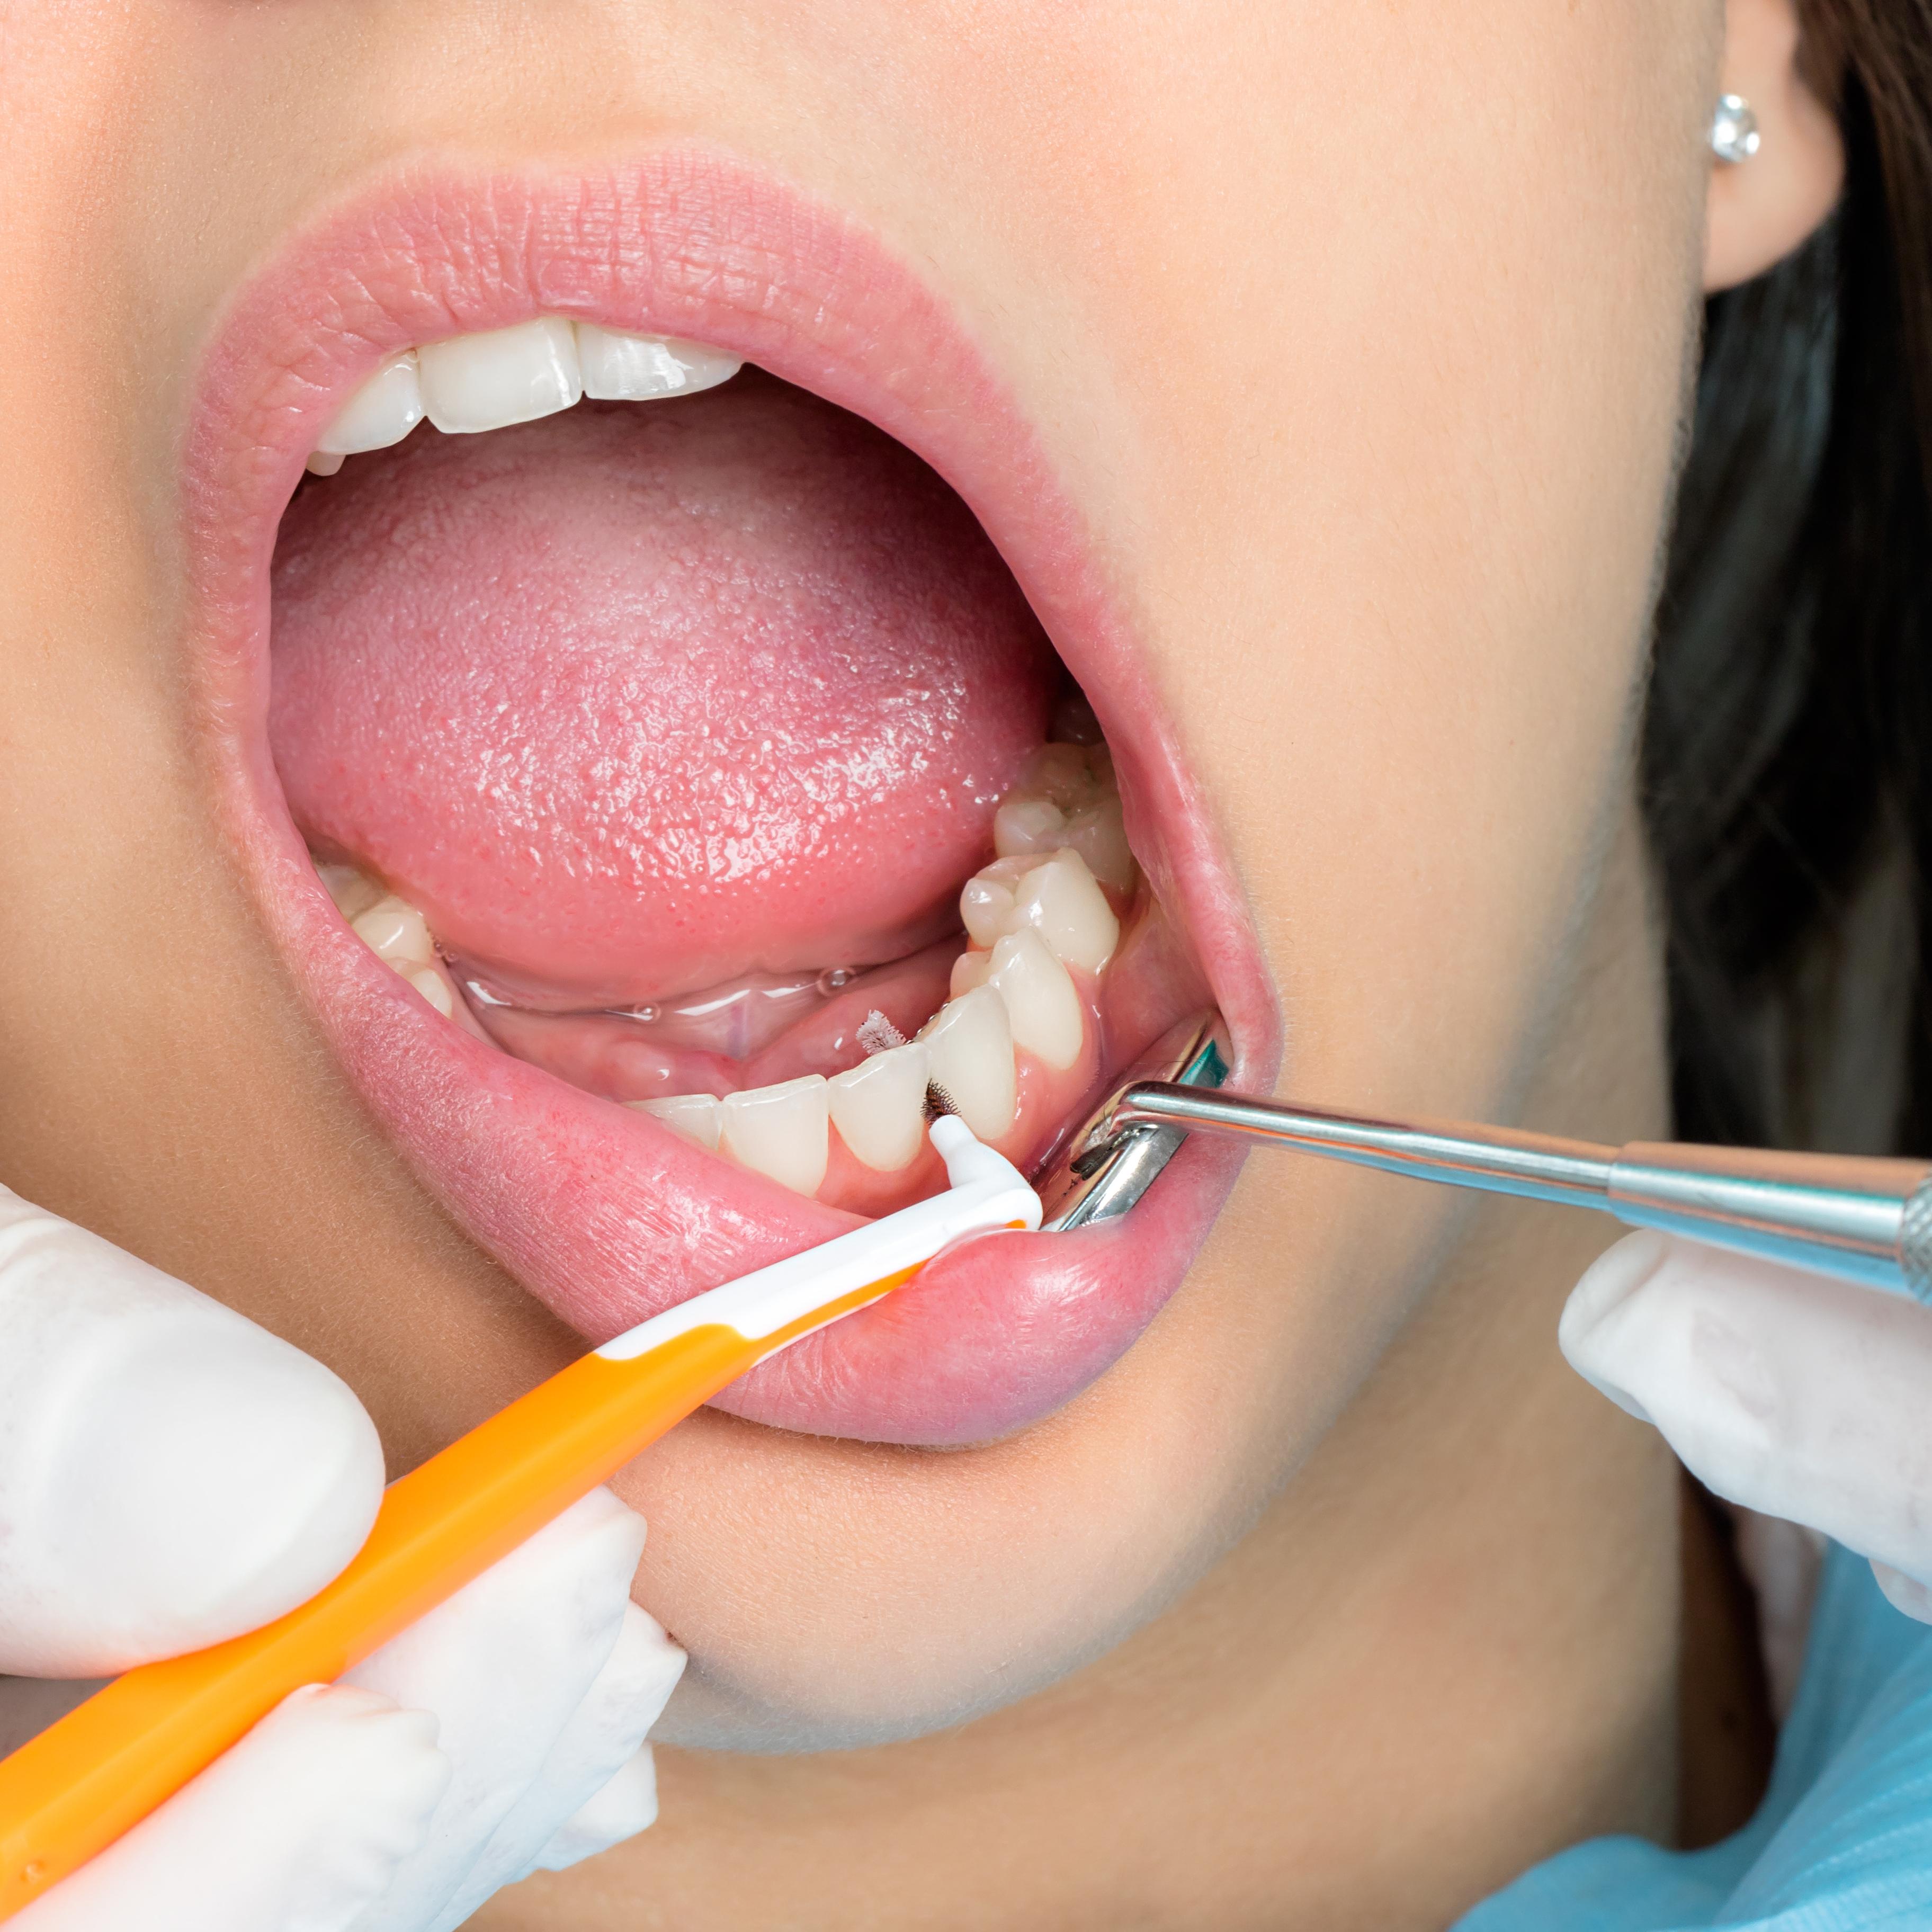 Enfermedades de la boca | Enfermedades bucales | MedlinePlus en español